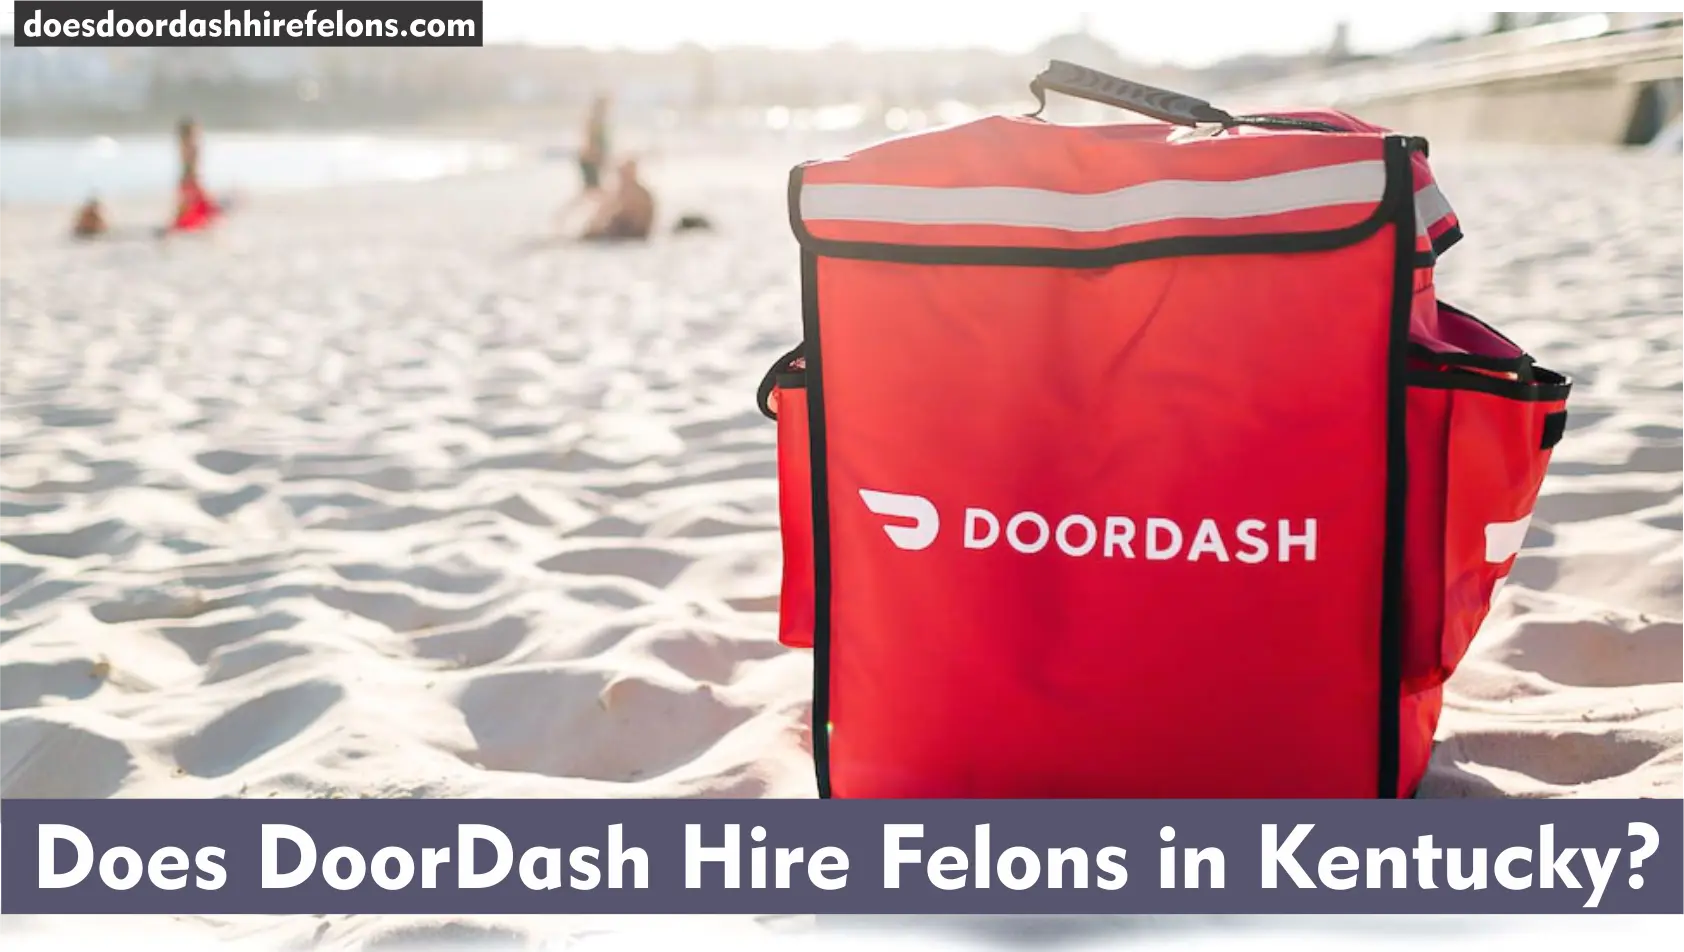 Does DoorDash Hire Felons in Kentucky?